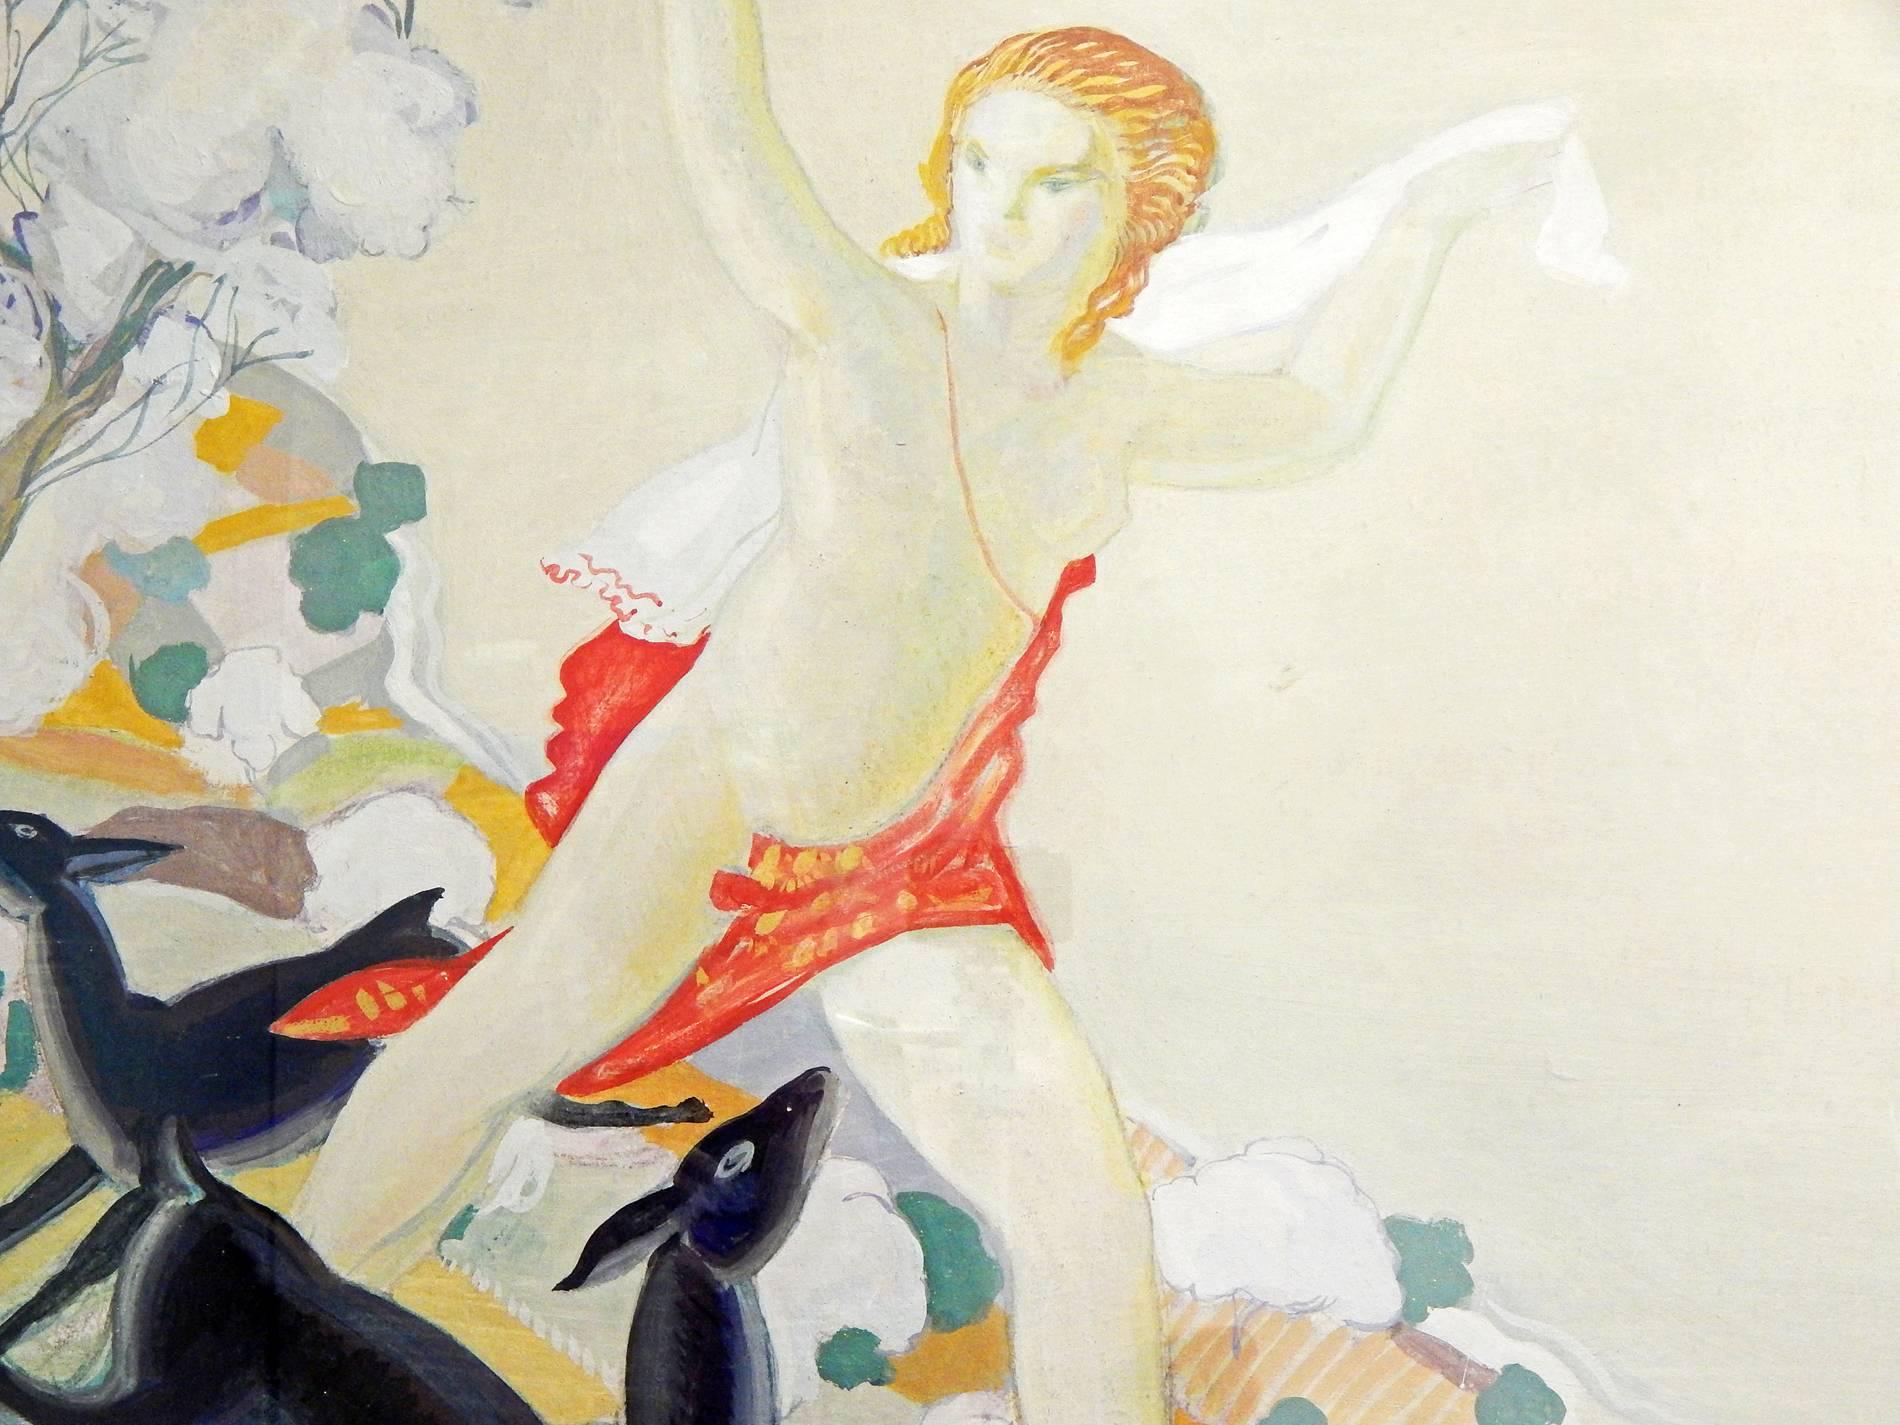 Fabuleux exemple de grande peinture décorative Art déco de l'Europe des années 1930, cette huile sur panneau représente la déesse Diane courant avec deux cerfs des bois vers un champ. Les couleurs or pâle et vert contrastant avec le cerf noir de